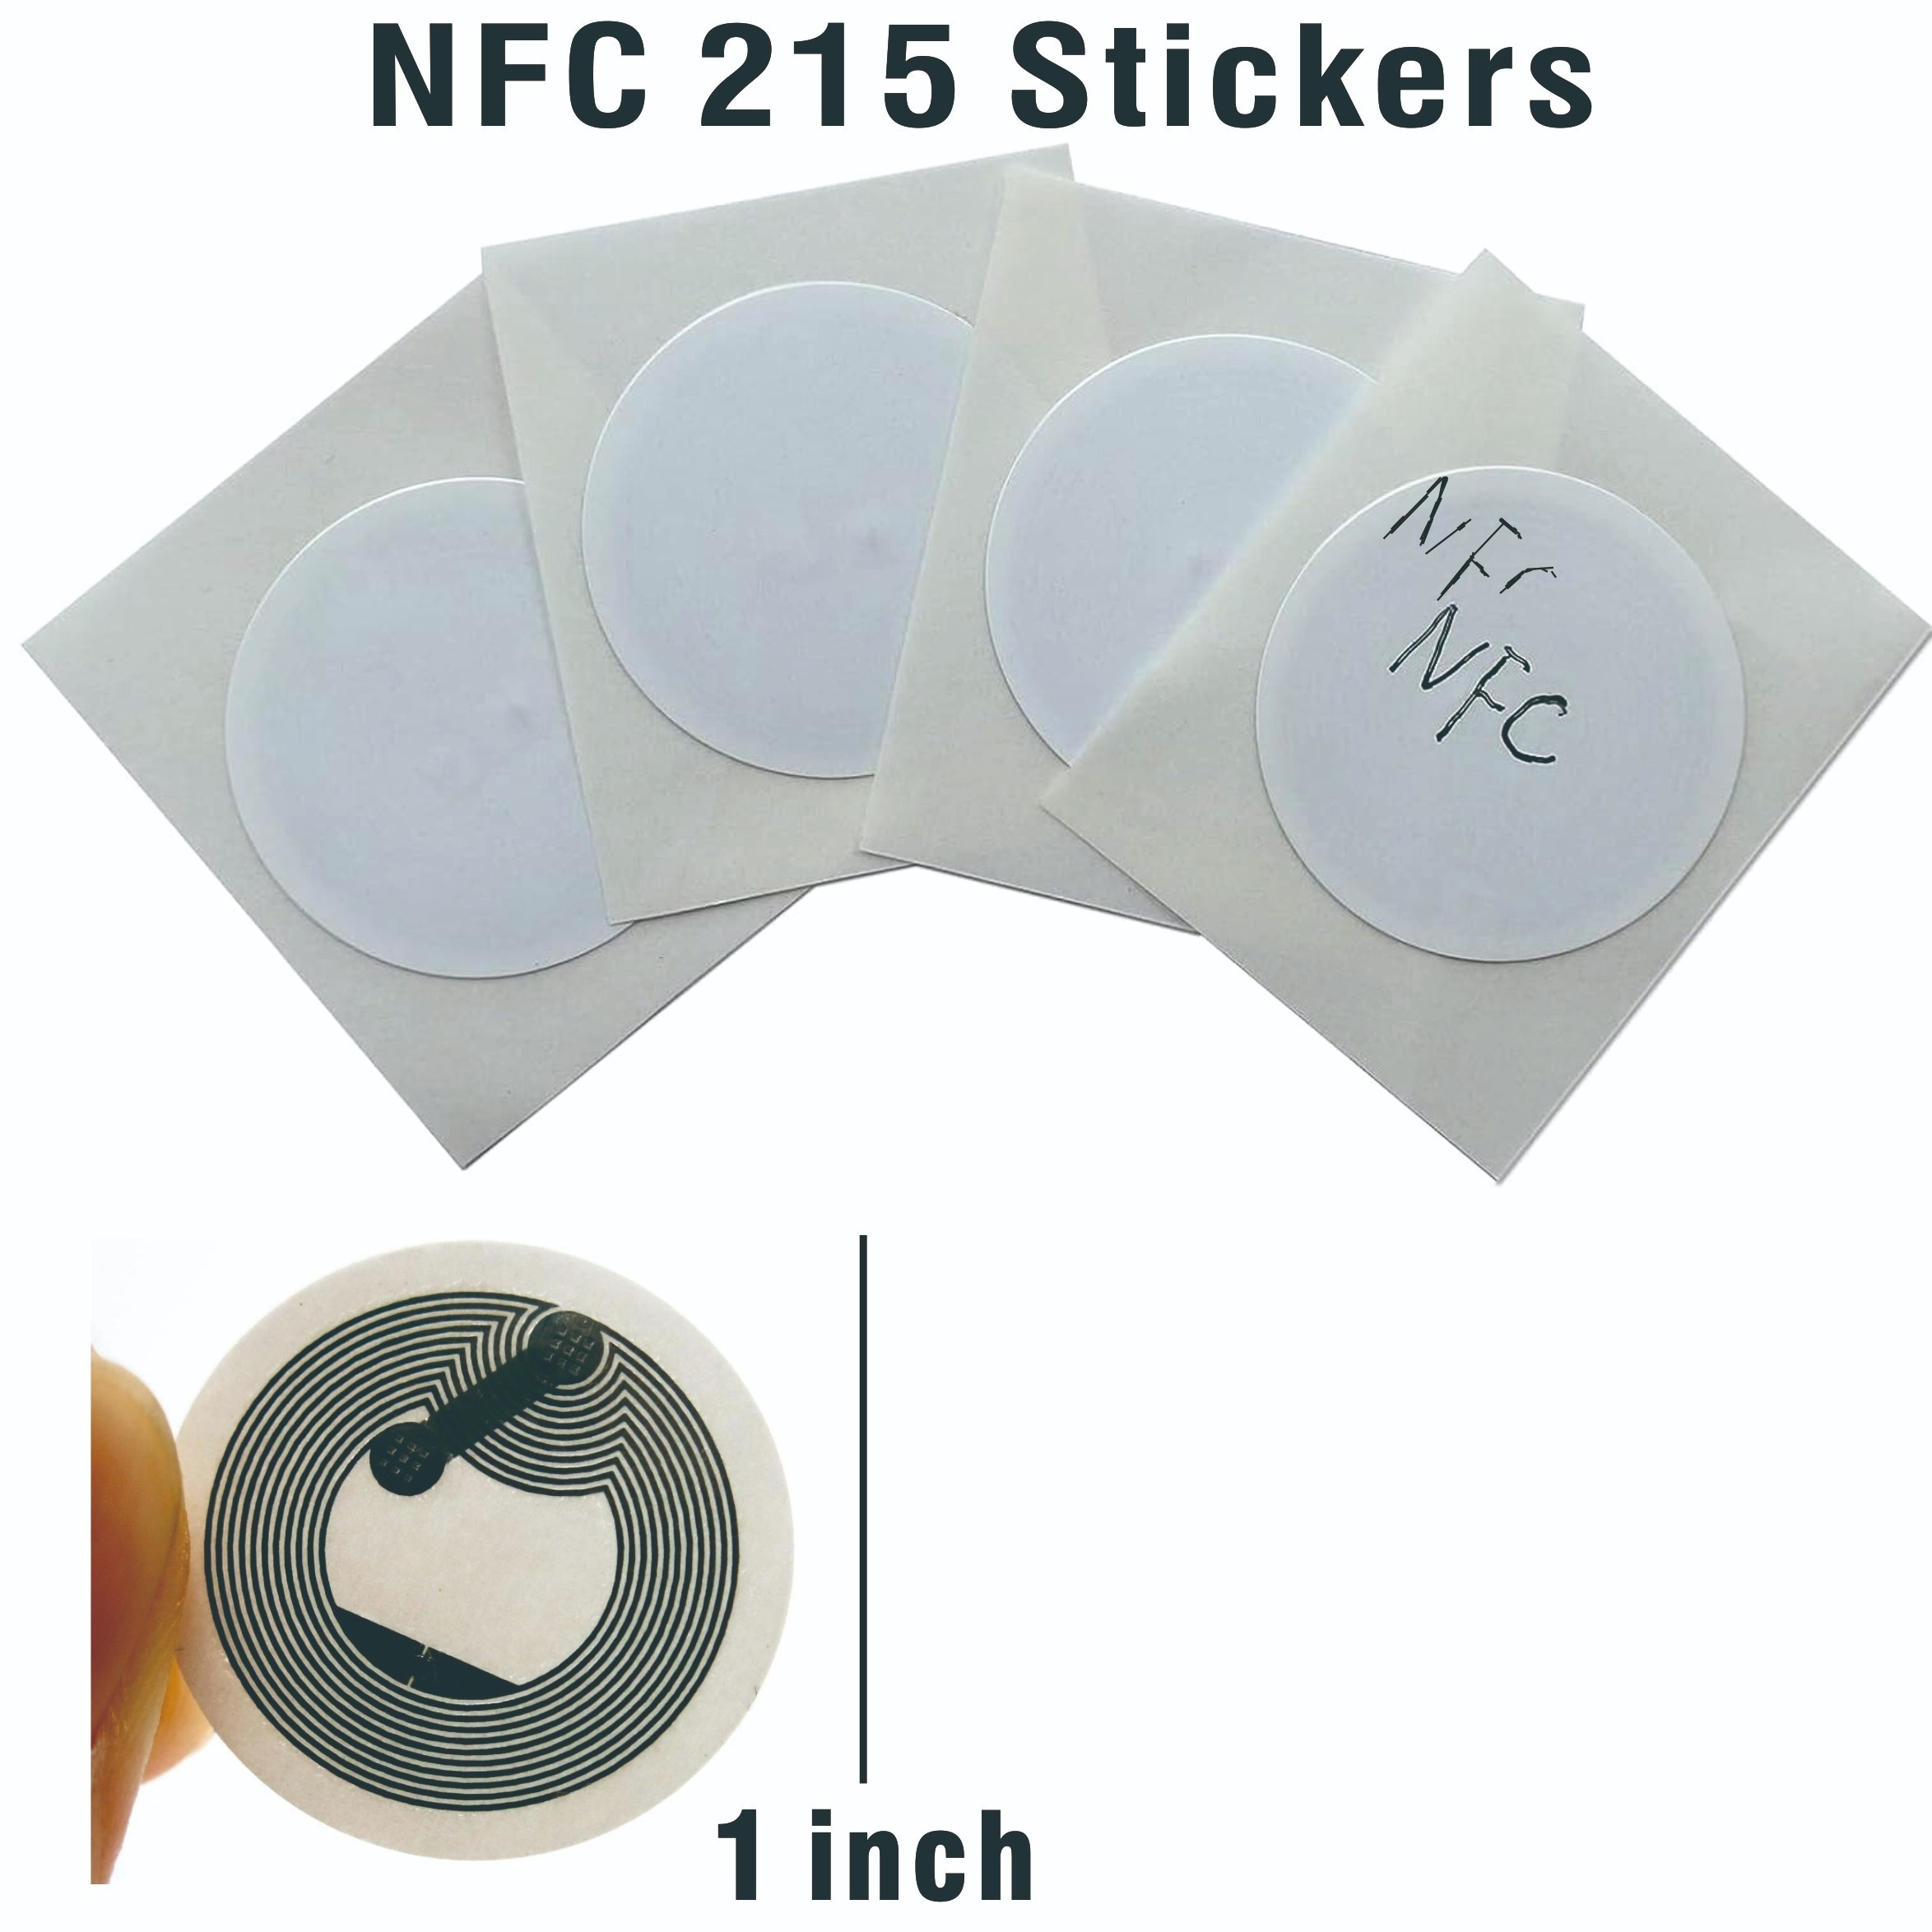 Etiqueta NFC Tag - Electromer